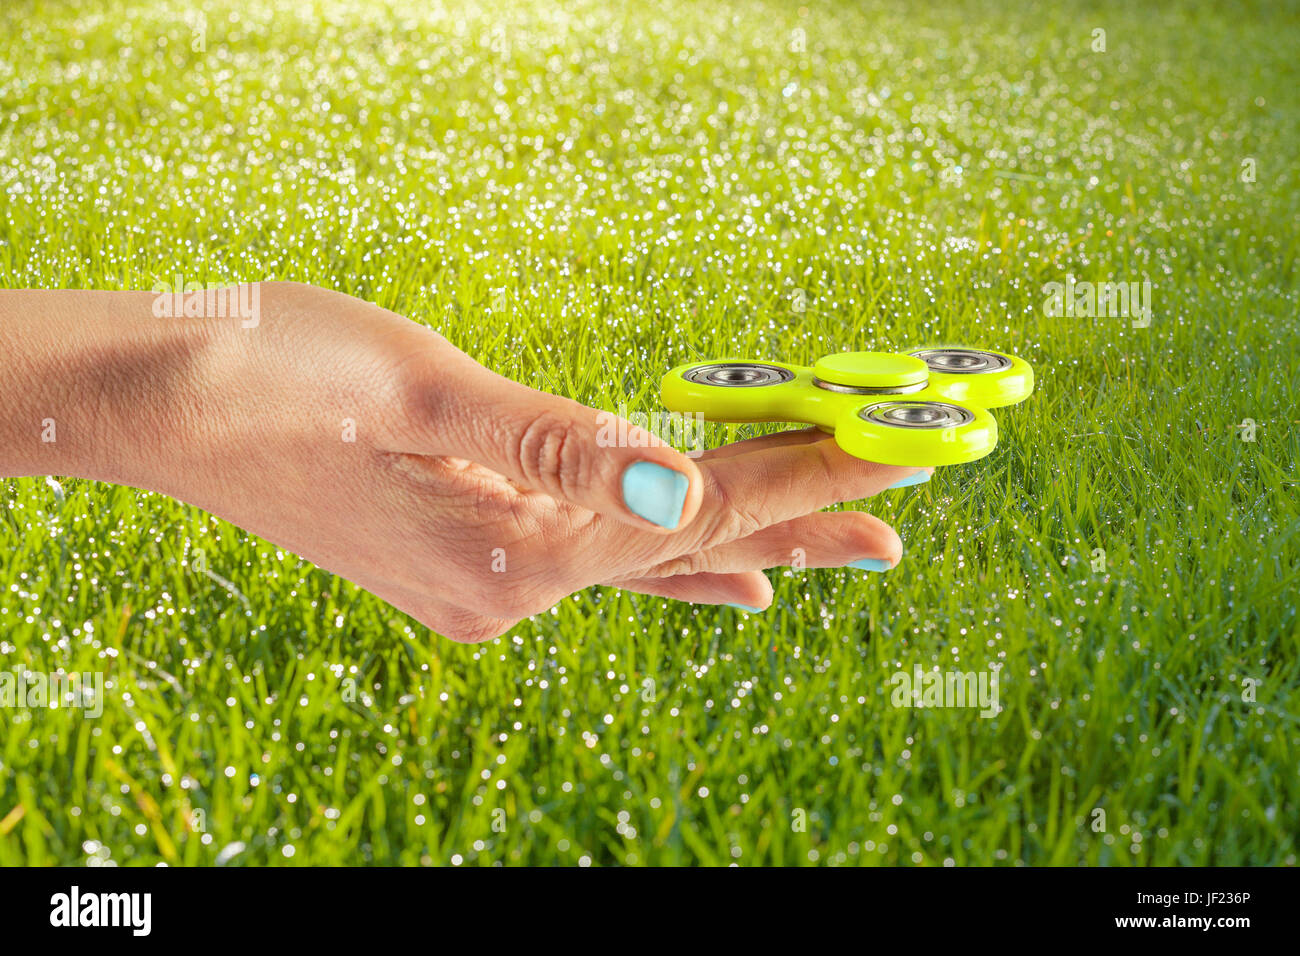 Weibliche Hand Holding gelb zappeln Spinner auf einem grasigen sonnigen Hintergrund Stockfoto